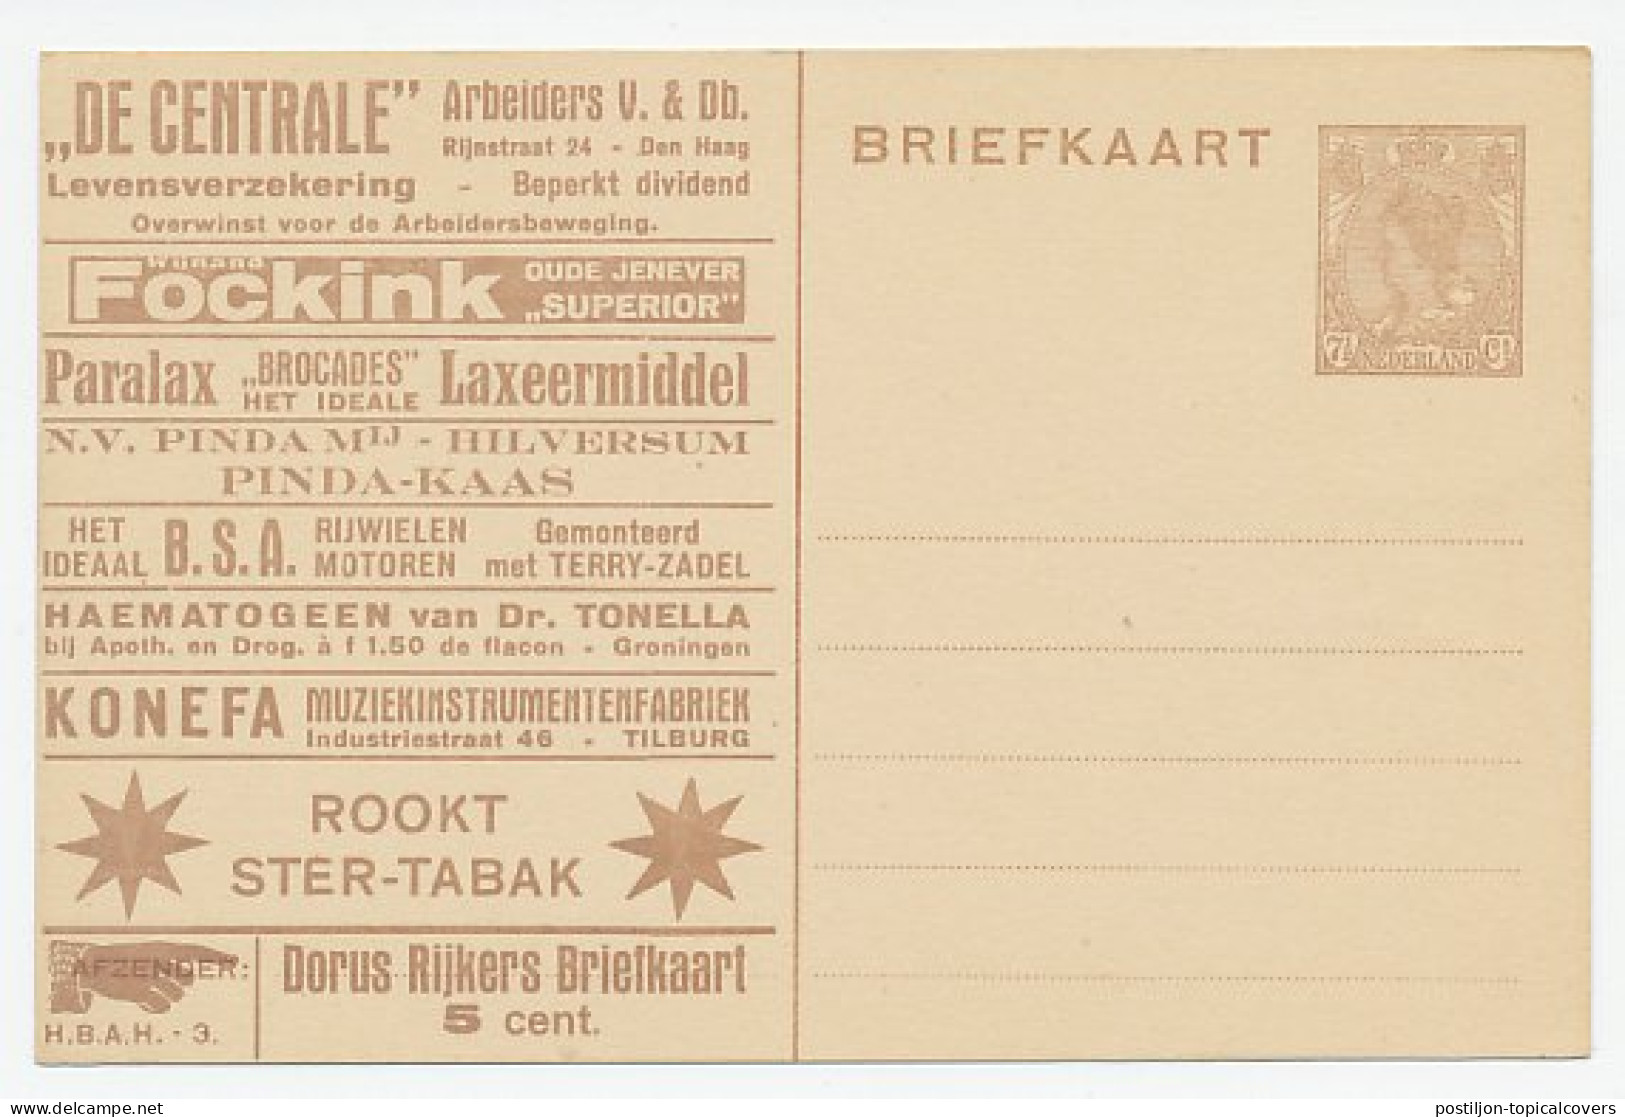 Particuliere Briefkaart Geuzendam DR5 - Ganzsachen